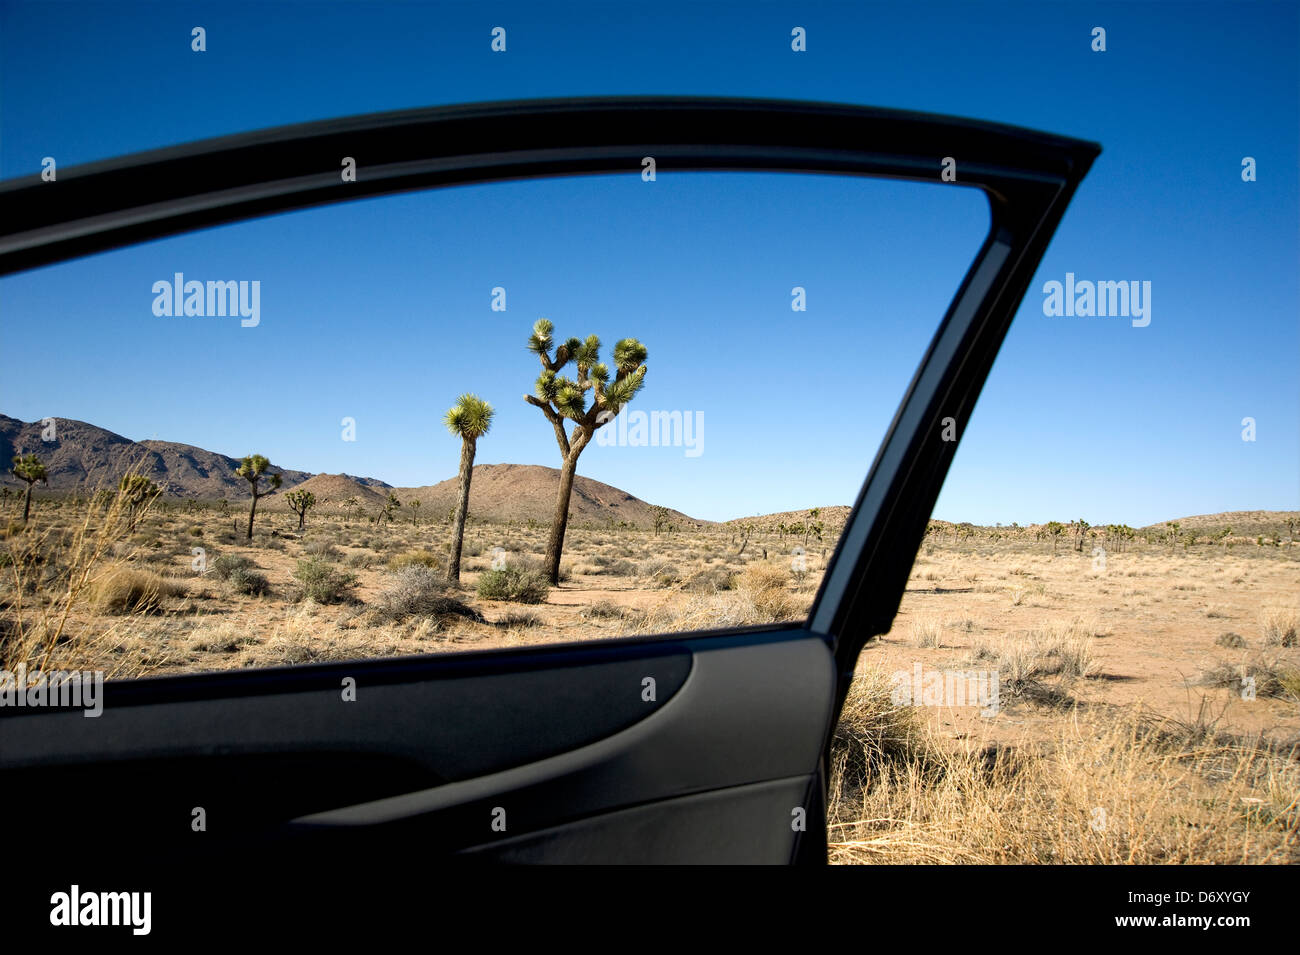 High Desert paysage à Joshua Tree National Park en Californie vue à partir de la fenêtre d'ouverture de porte de voiture Banque D'Images